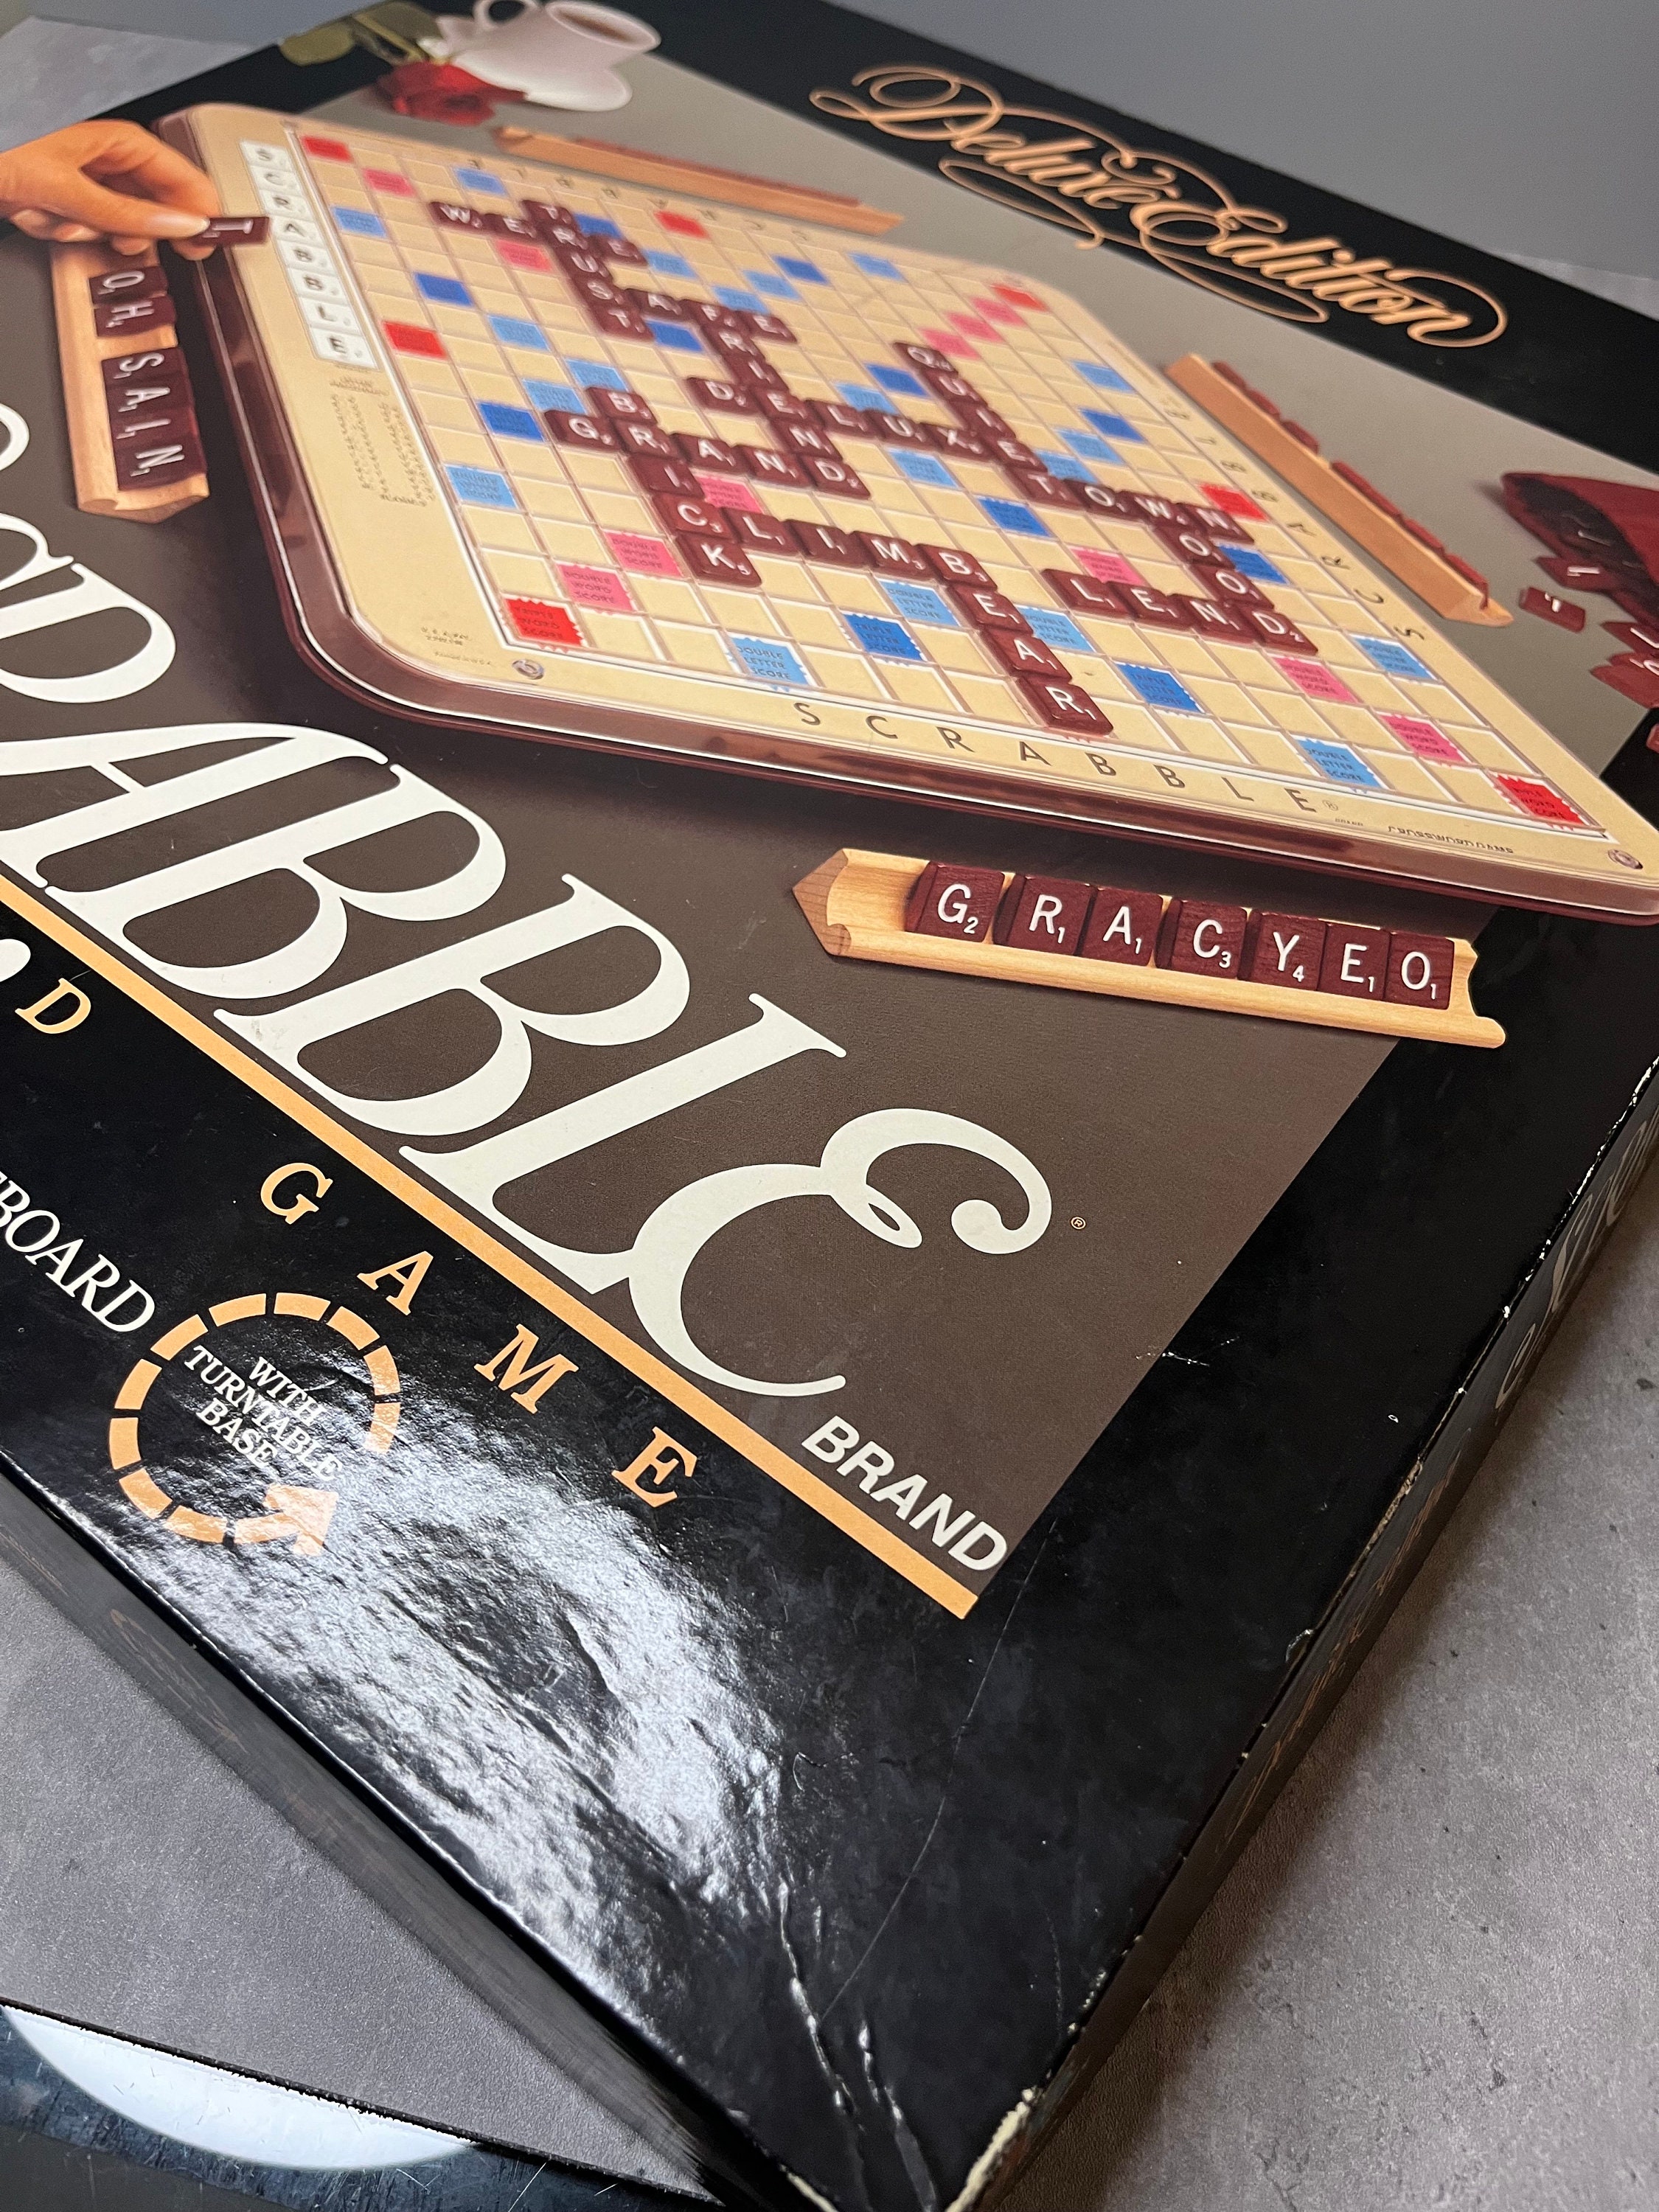 Scrabble - Edition Junior- Édition 1989 – Yoti Boutique